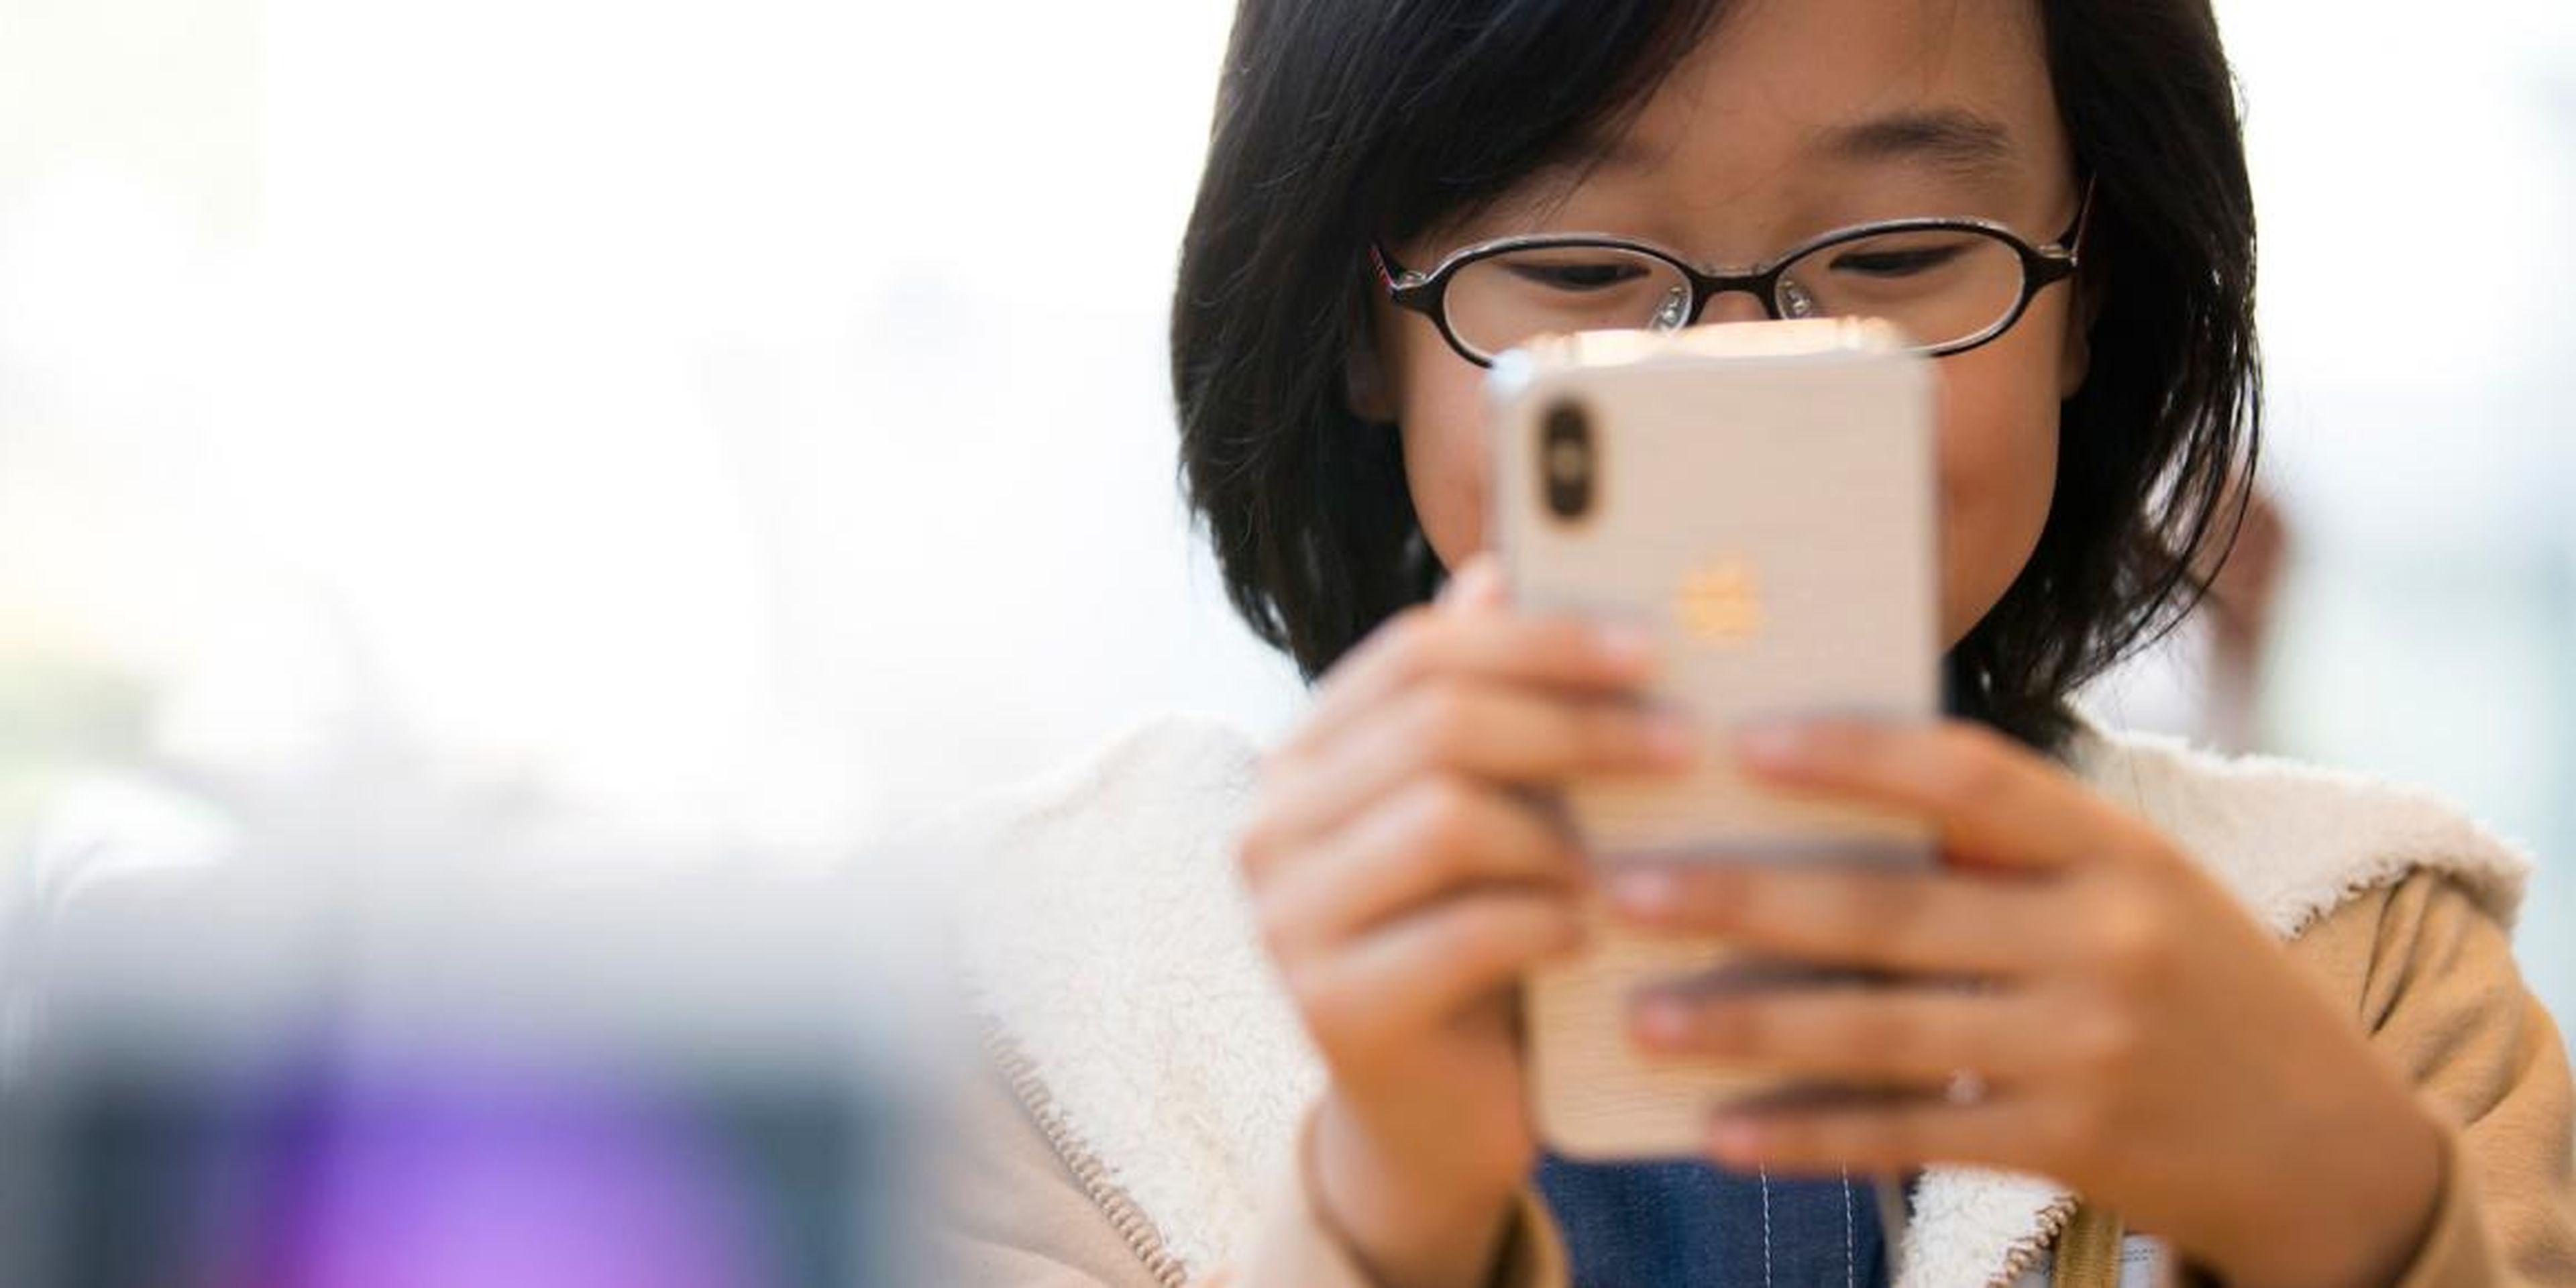 Todos los niños menores de 15 años tendrán prohibido utilizar sus teléfonos móviles a lo largo de todo el día. En la imagen, un niño juega con un iPhone X en Tokio, Japón.